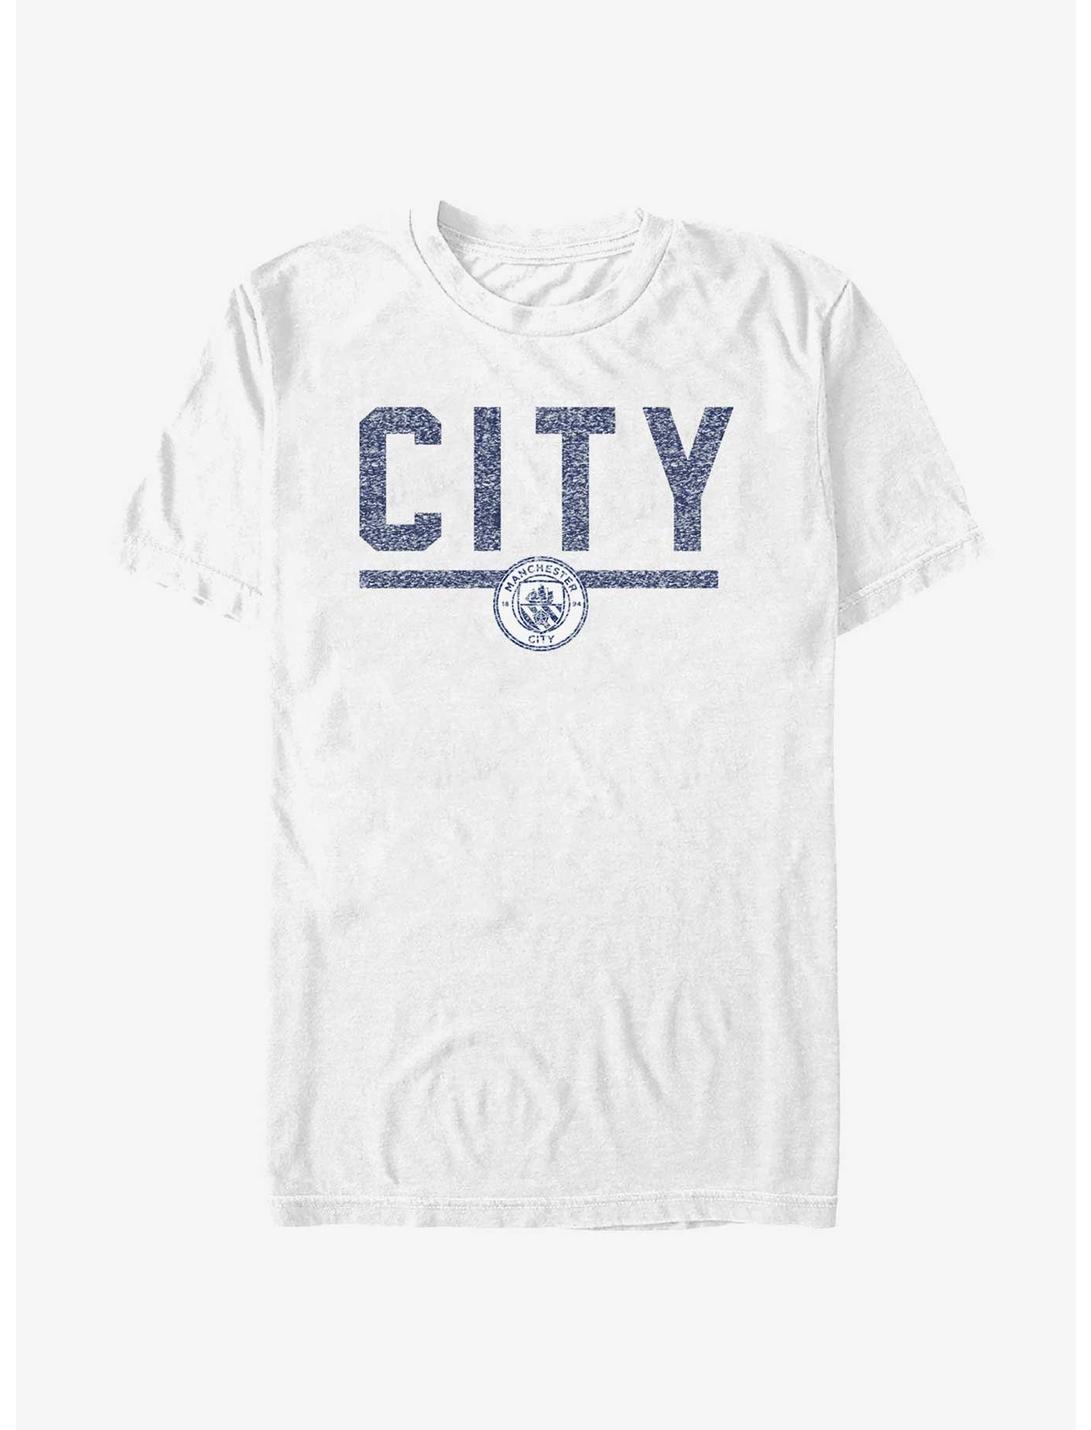 Premier League Manchester City F.C. Big City T-Shirt, WHITE, hi-res